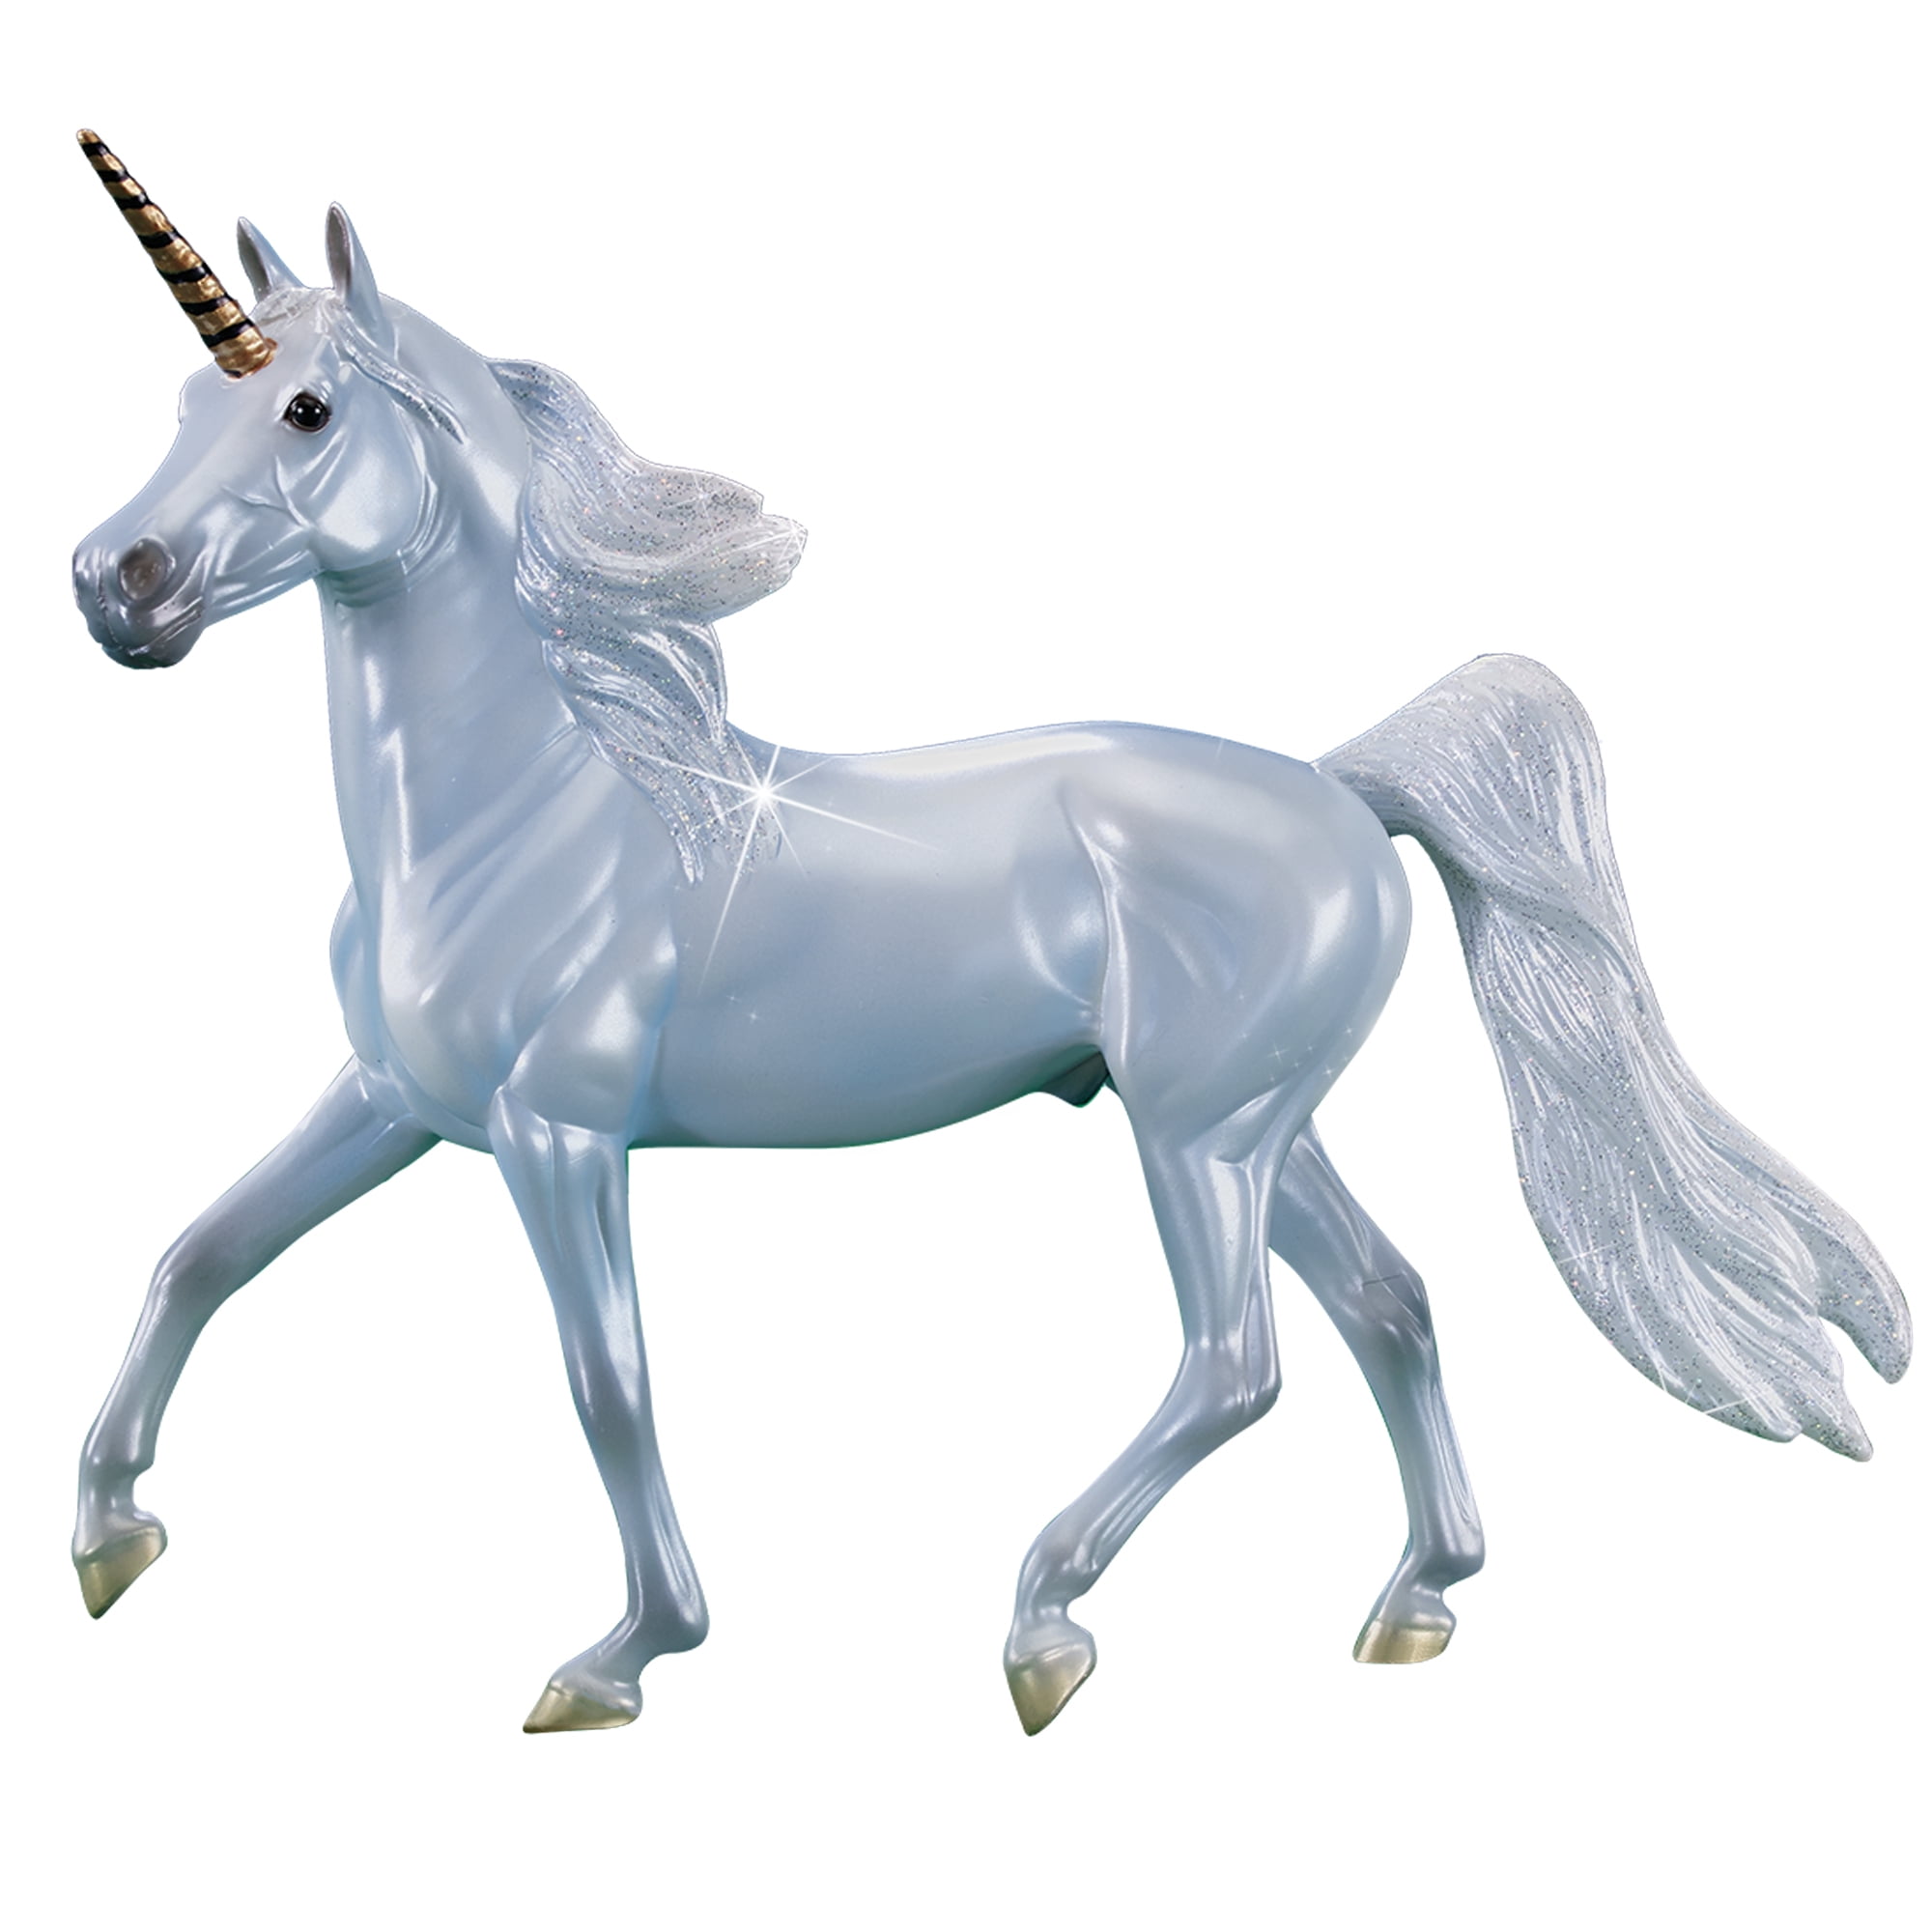 Plastic Unicorn Figurine Toy 3" Tall White & Blue One Raised Hoof